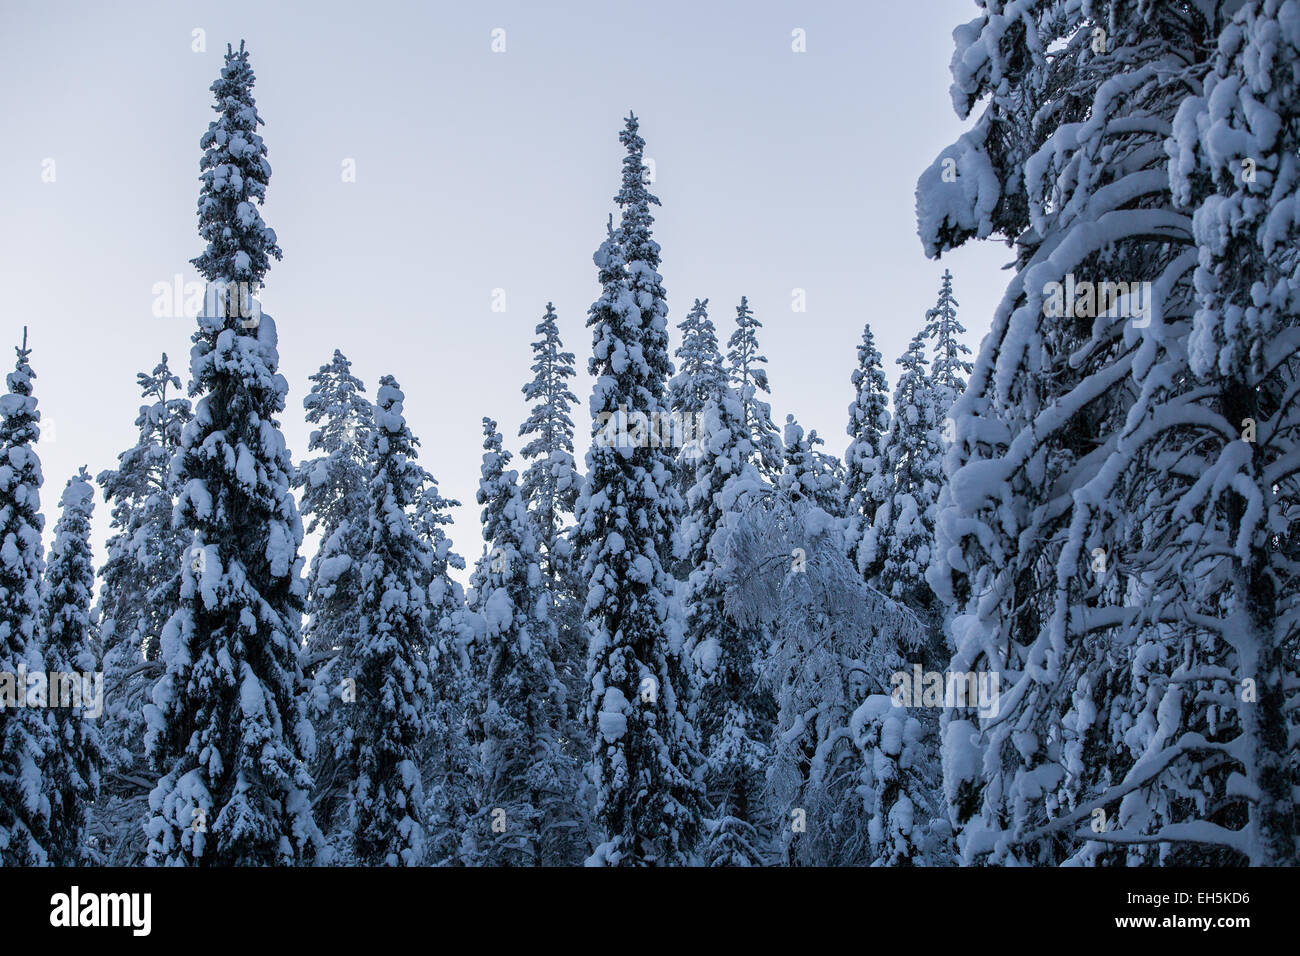 Hiver neige gelée scène forestière Banque D'Images